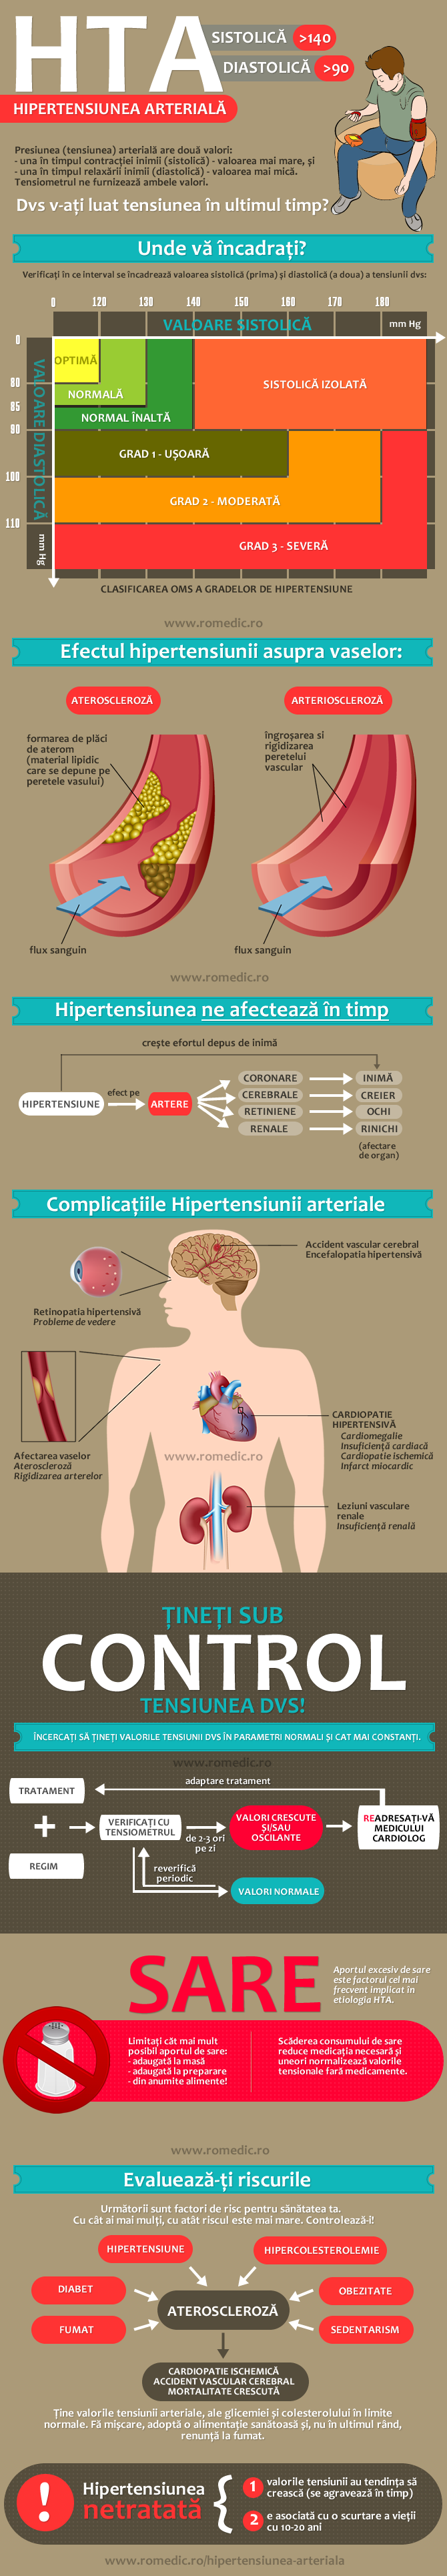 Hipertensiune arterială - Wikipedia